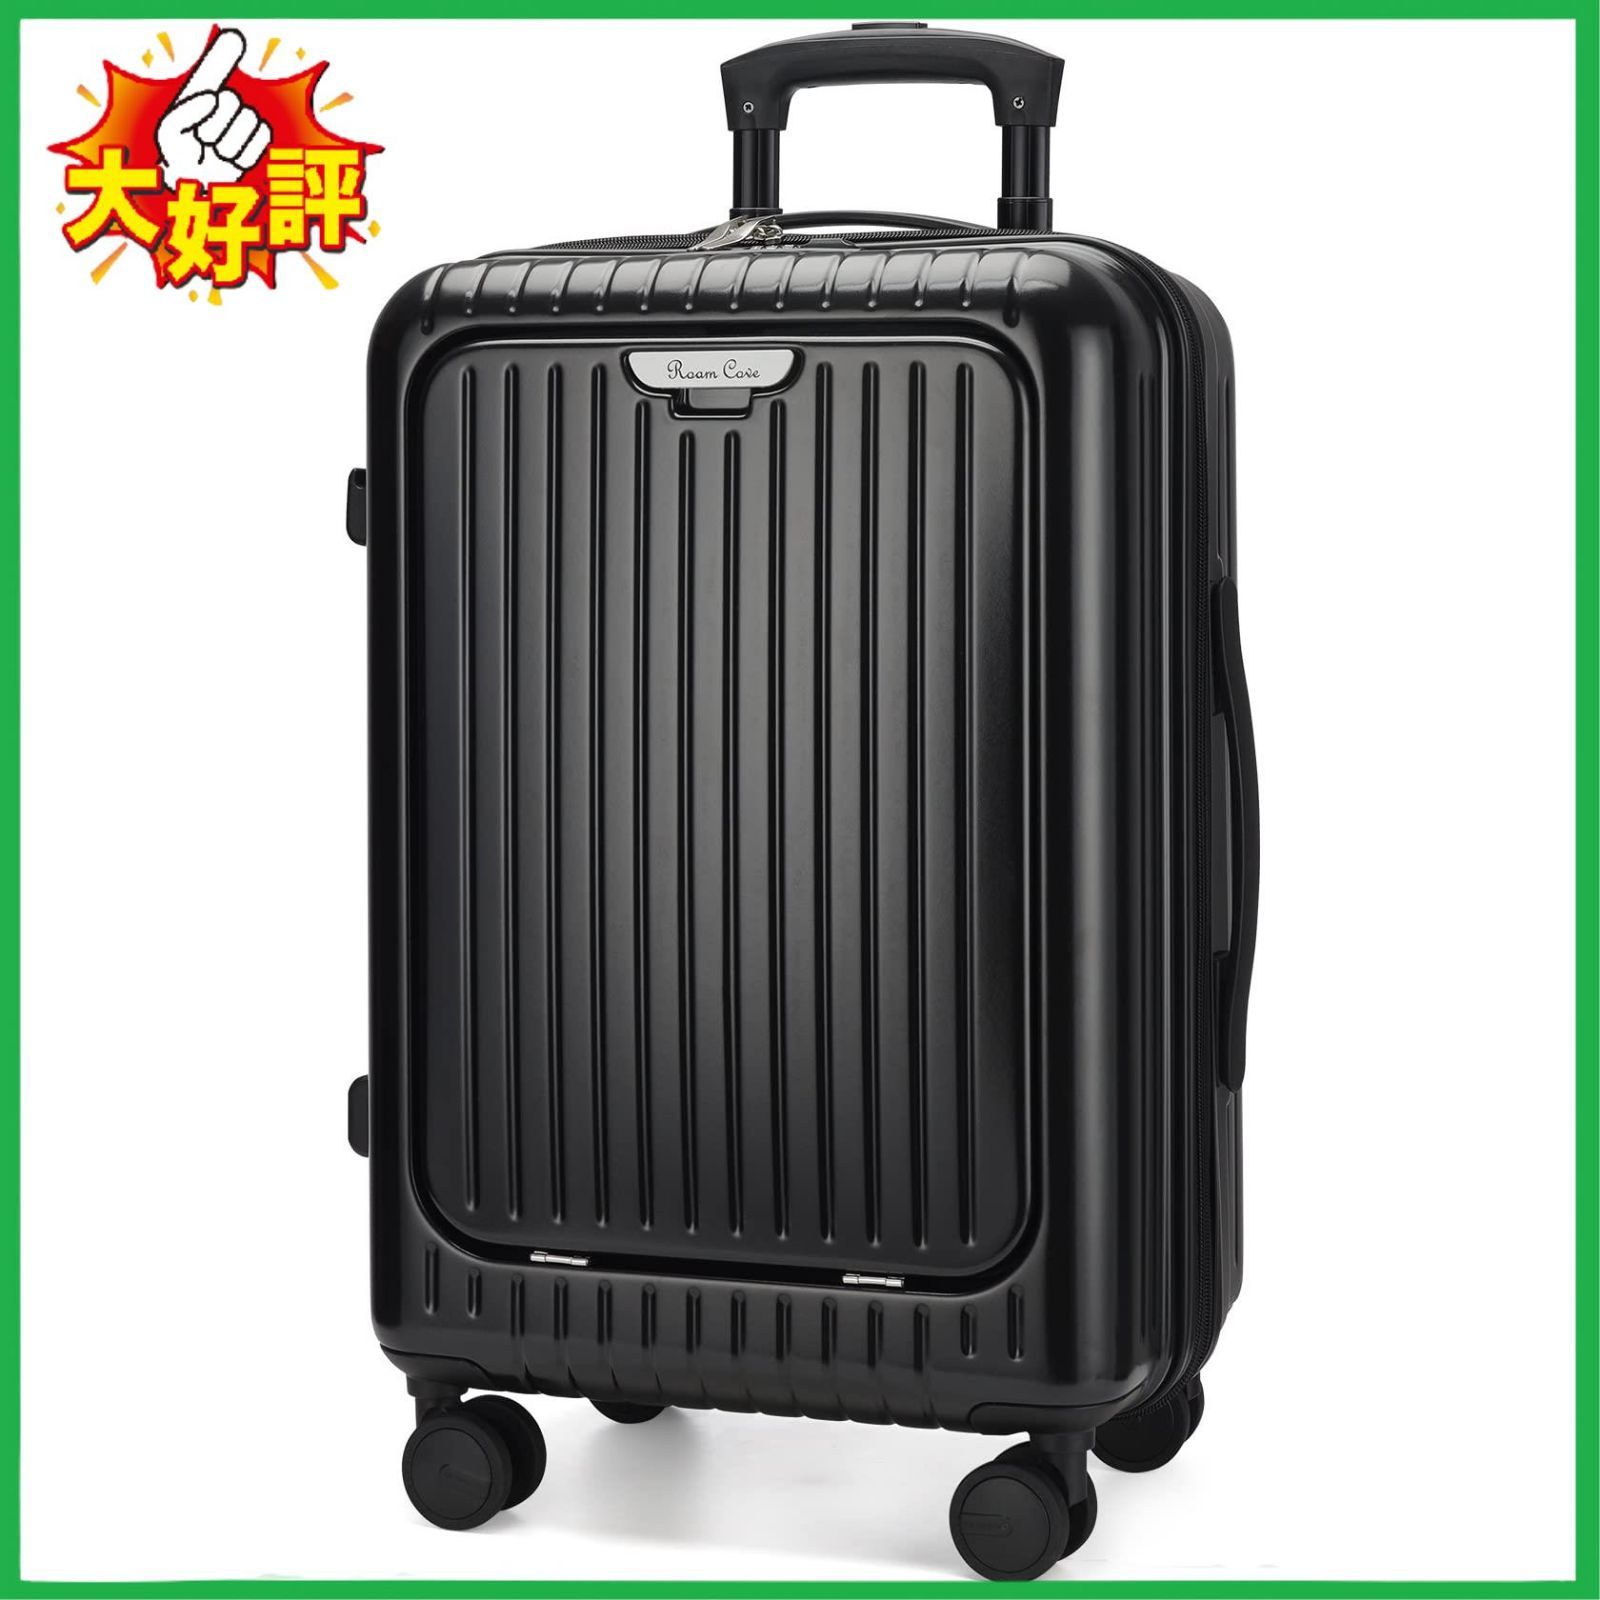 スーツケース キャリーケース 機内持ち込み 多機能スーツケース フロントオープン 前開き USBポート付き 充電口 カップホルダー付き 32L~100L 超軽量 大容量 xb_708